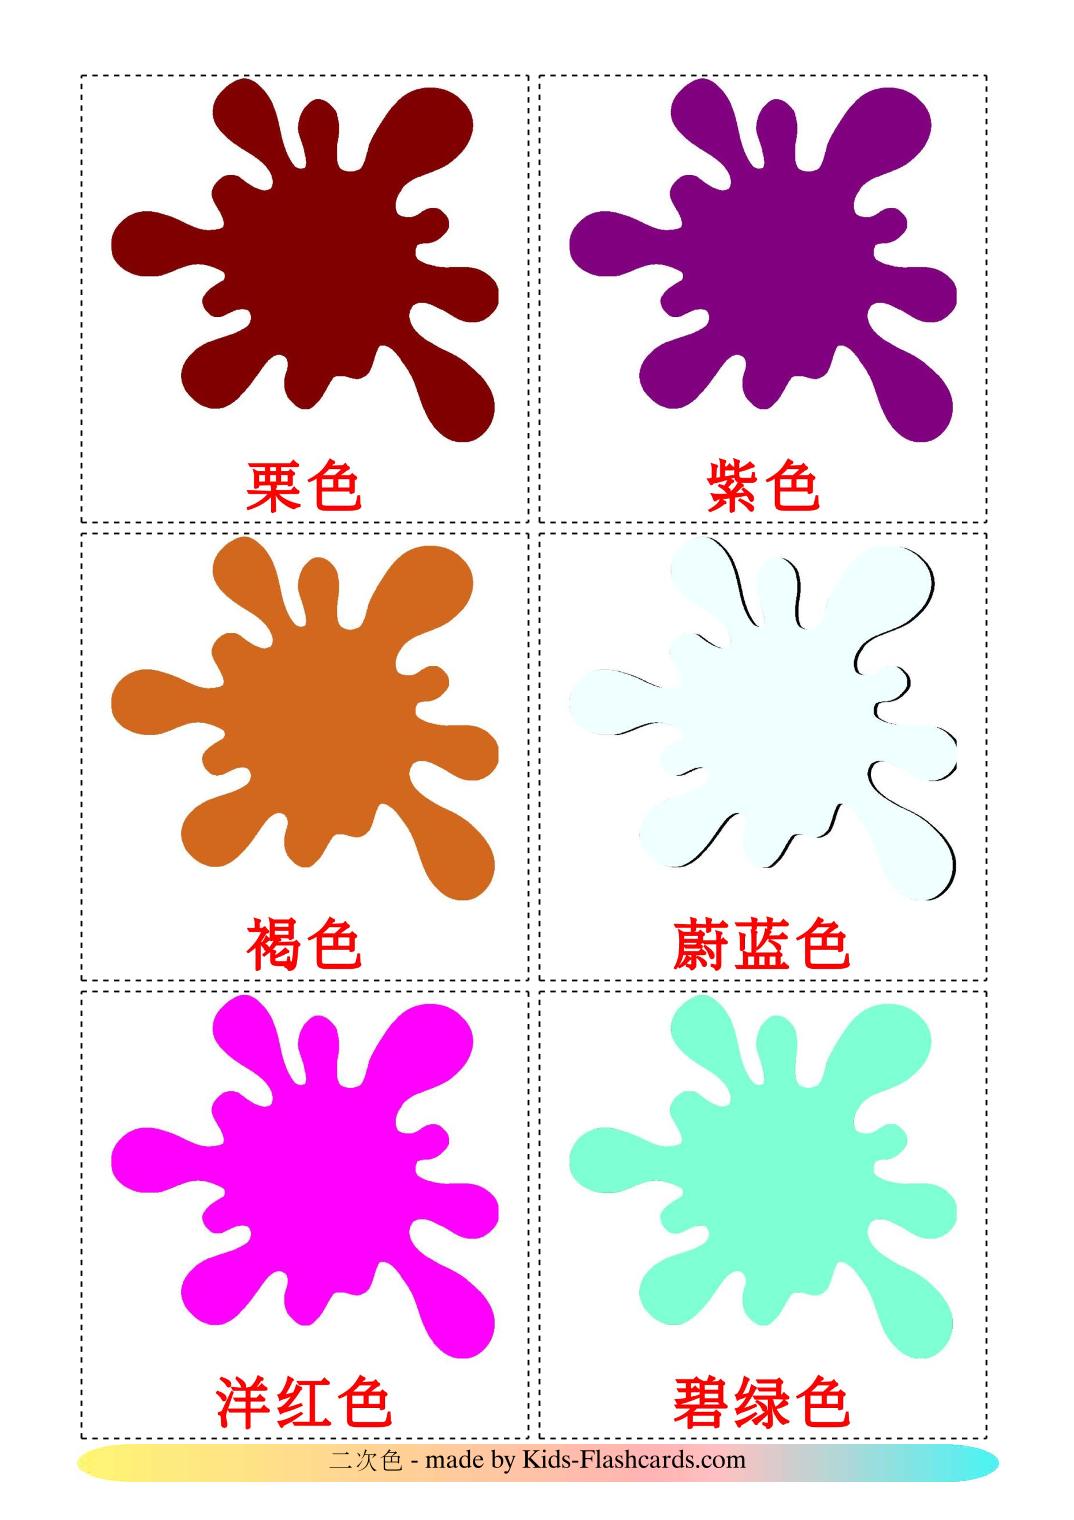 Komplementärfarben - 20 kostenlose, druckbare Chinesisch(Vereinfacht) Flashcards 